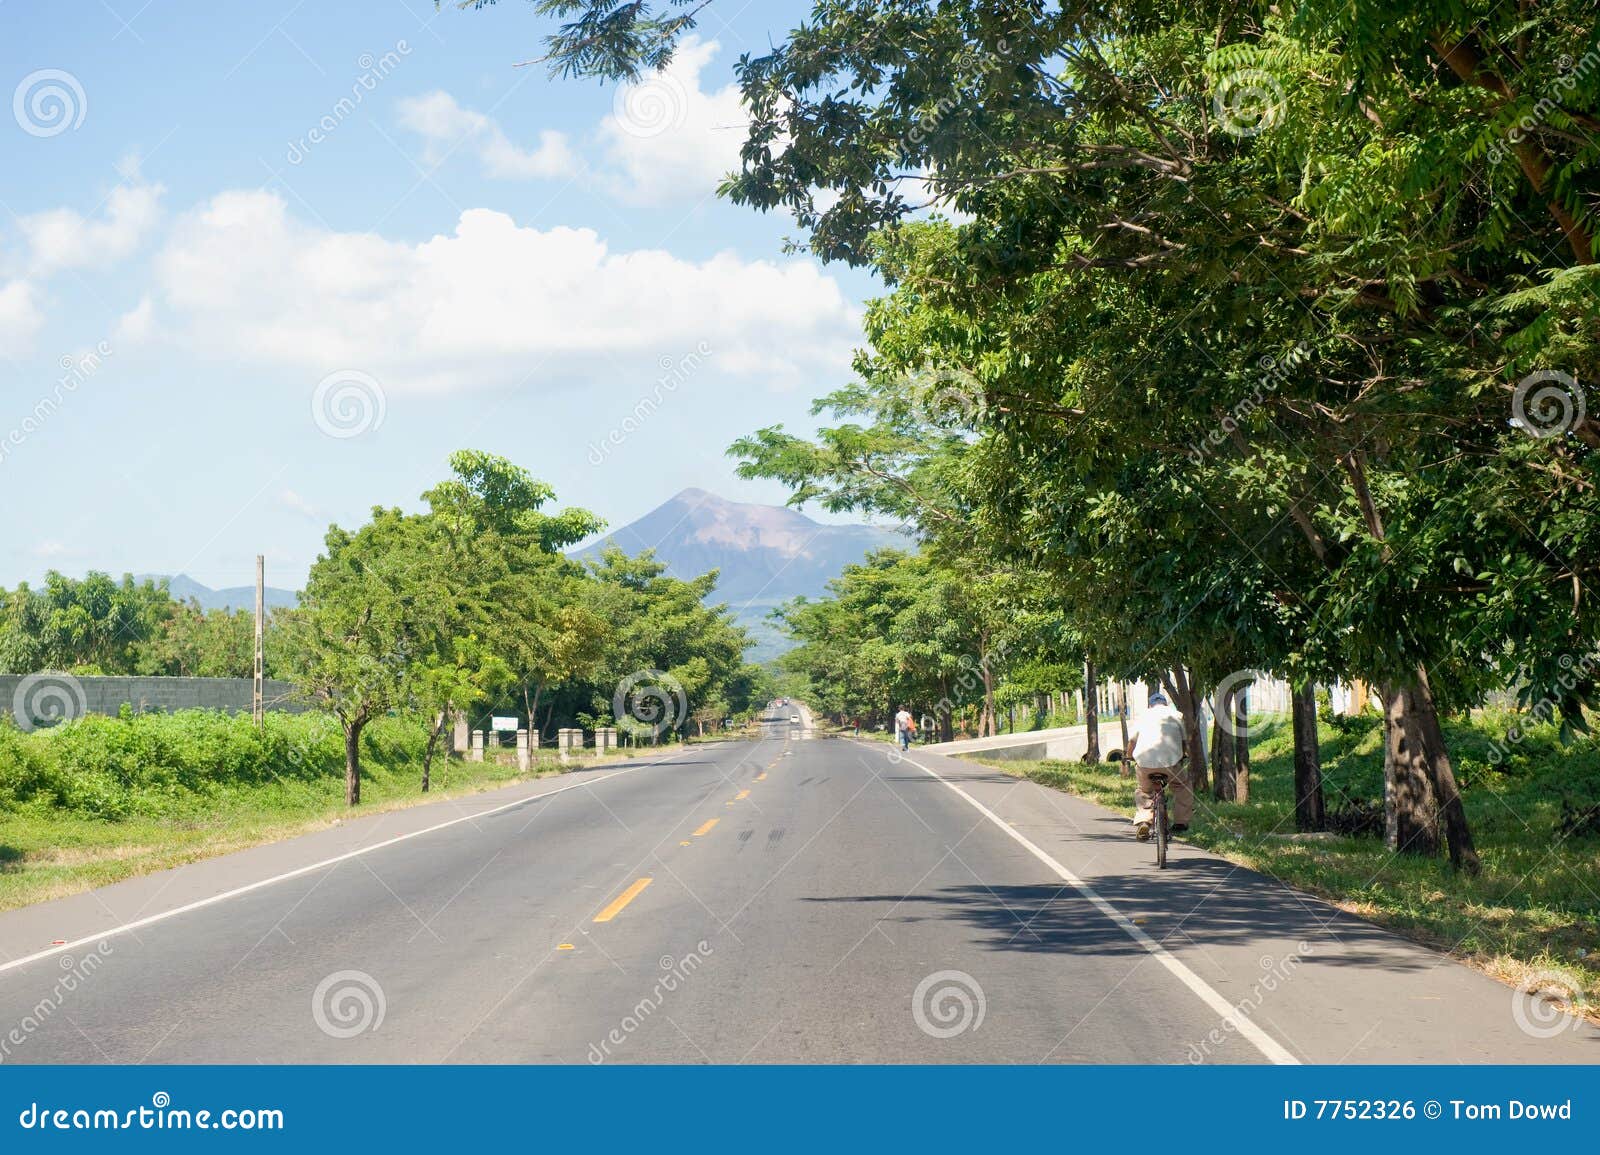 highway in leon, nicaragua